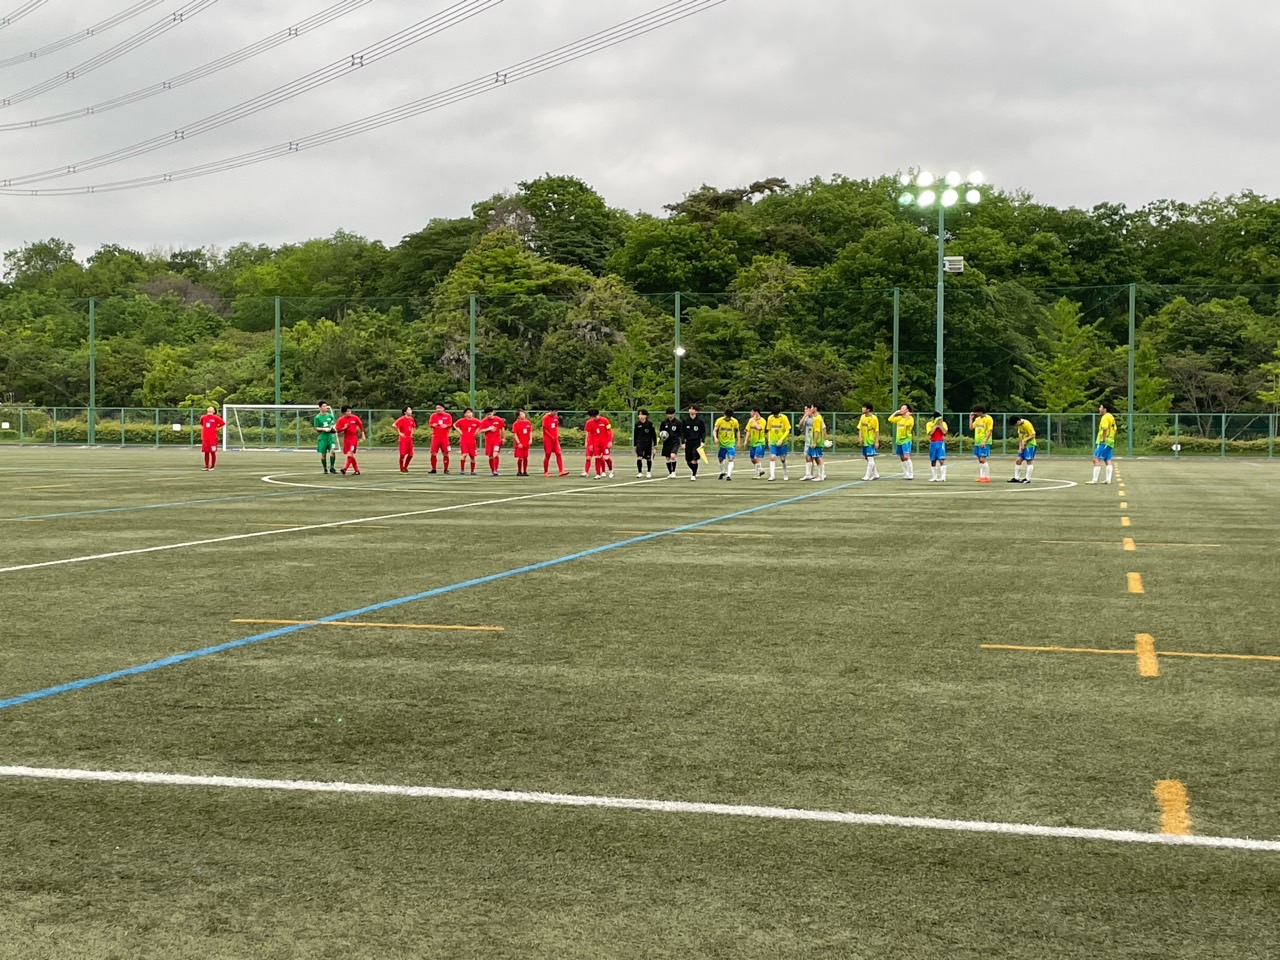 東京都リーグ3部第3試合(第3R) vs.FC NossA八王子 試合結果